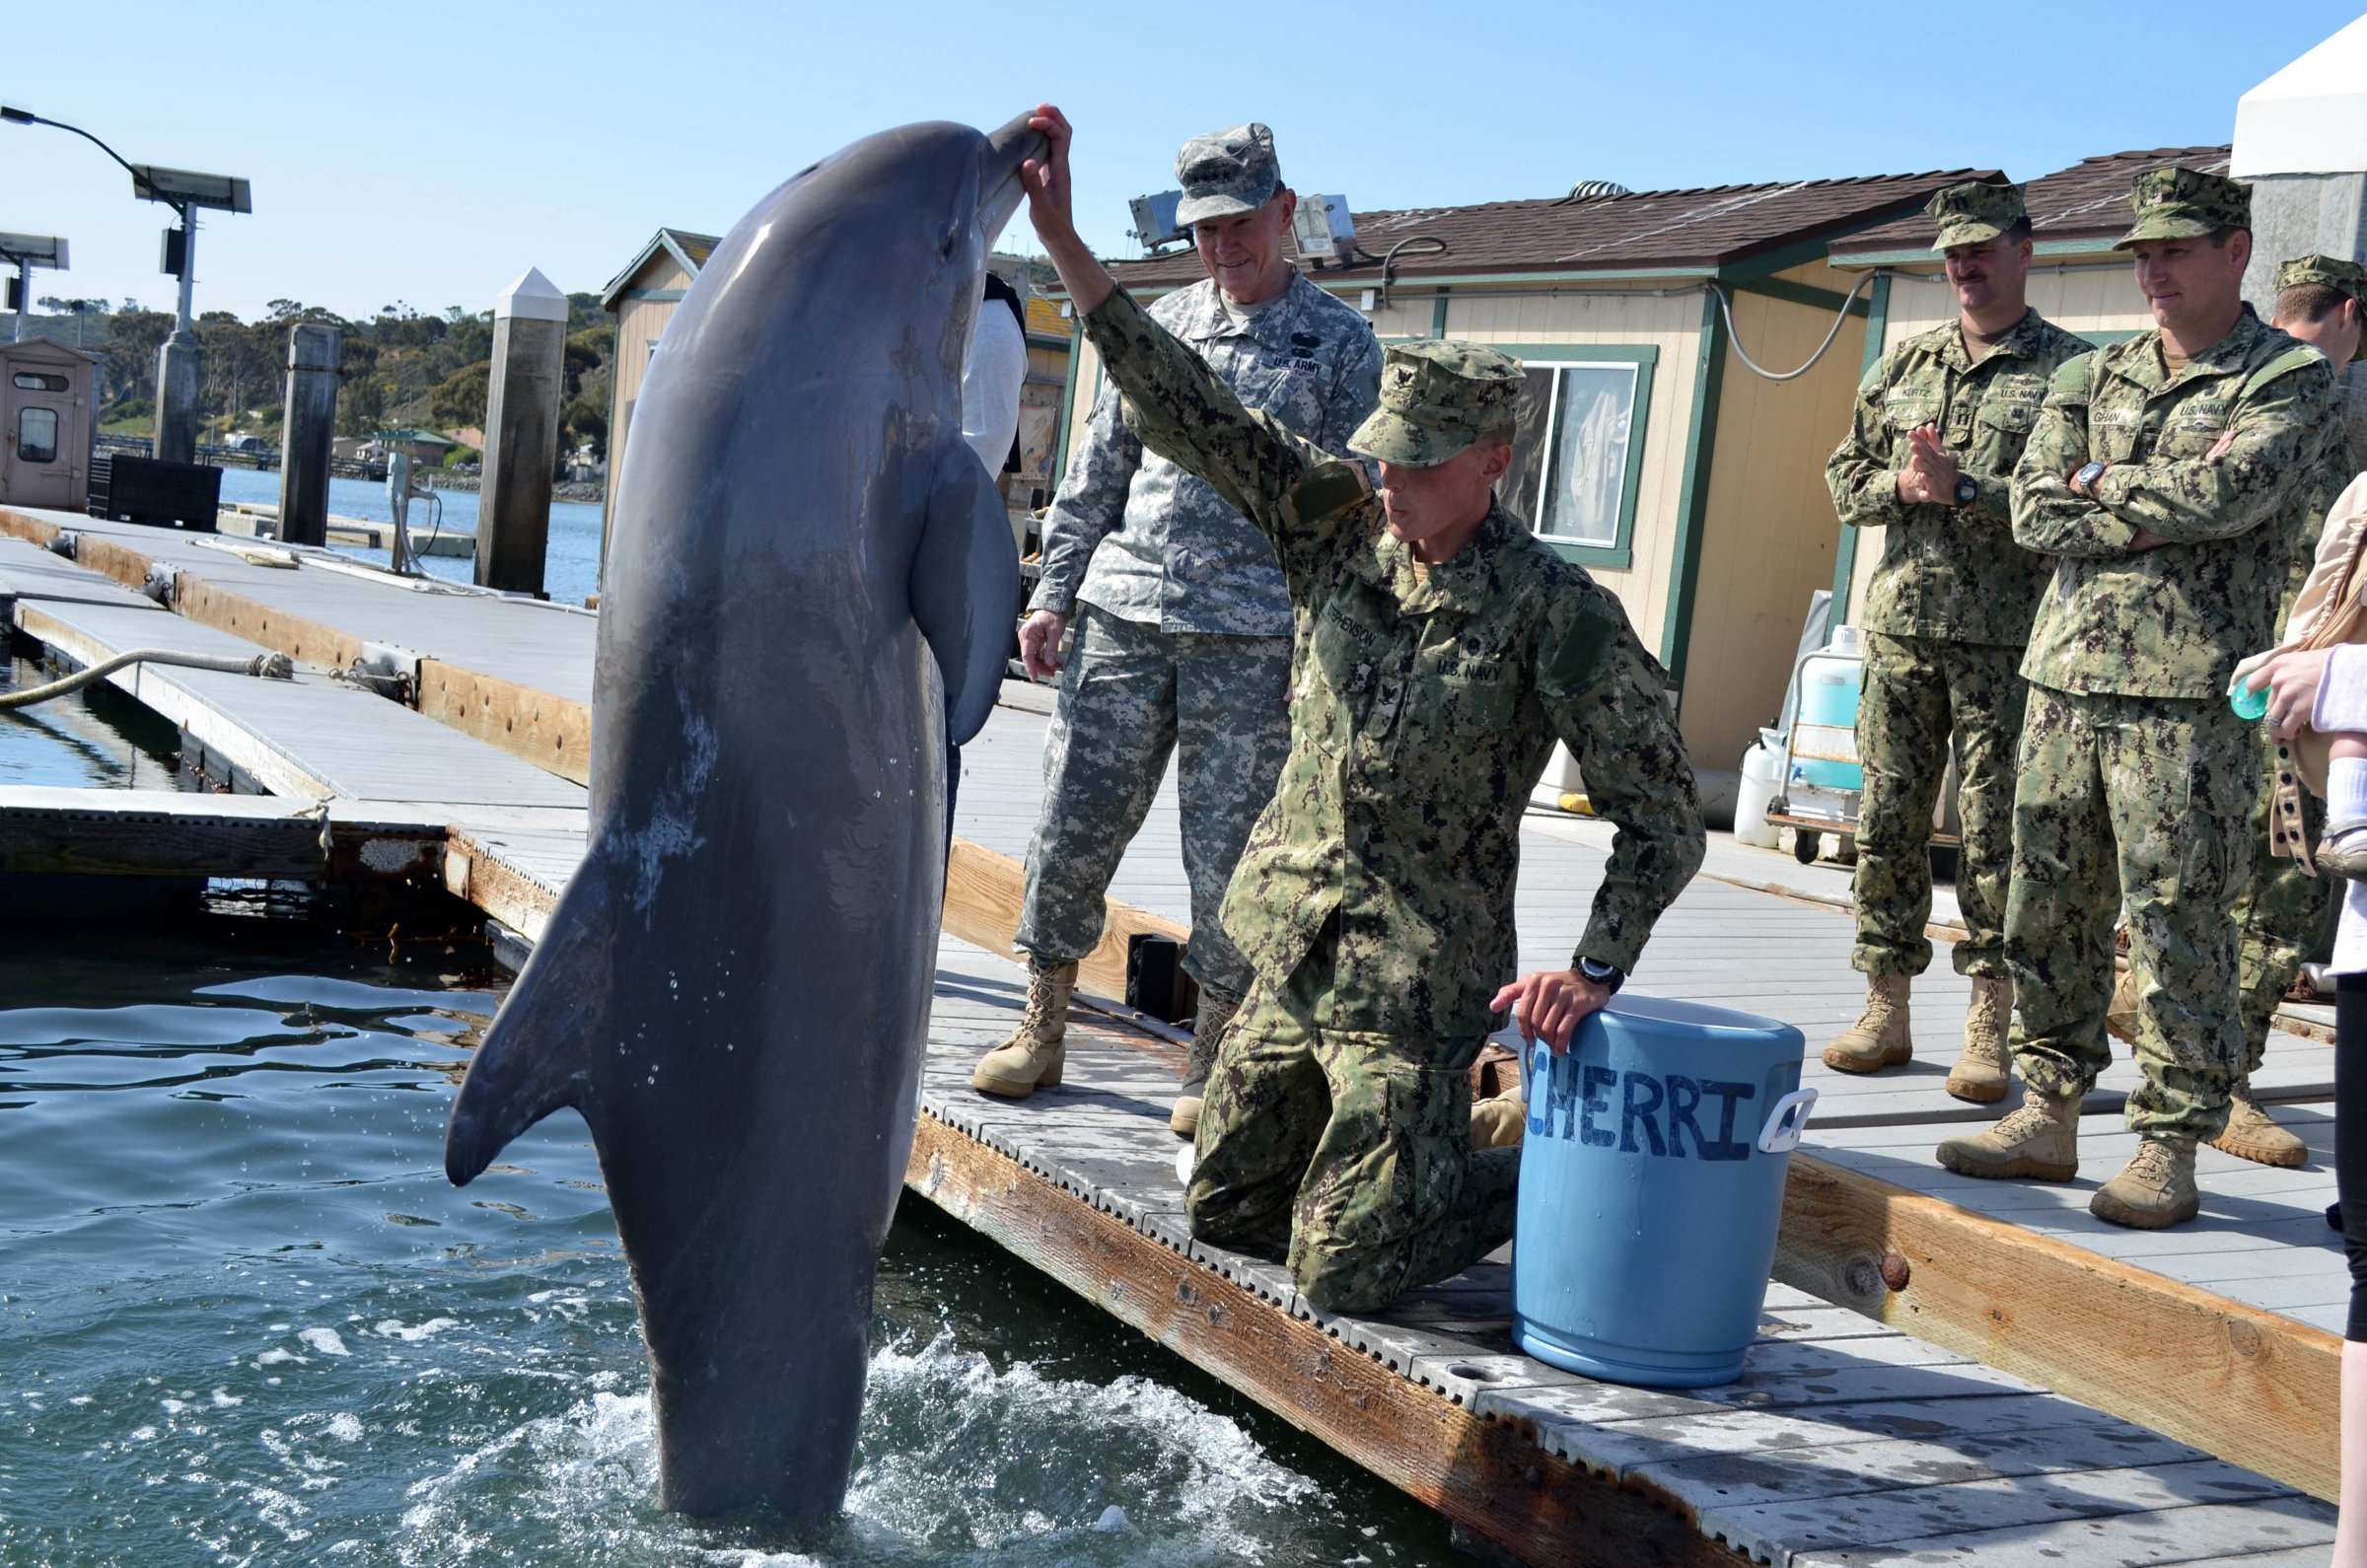 marine vs dolfijnen mijnen opsporen leger militaire zoogdieren